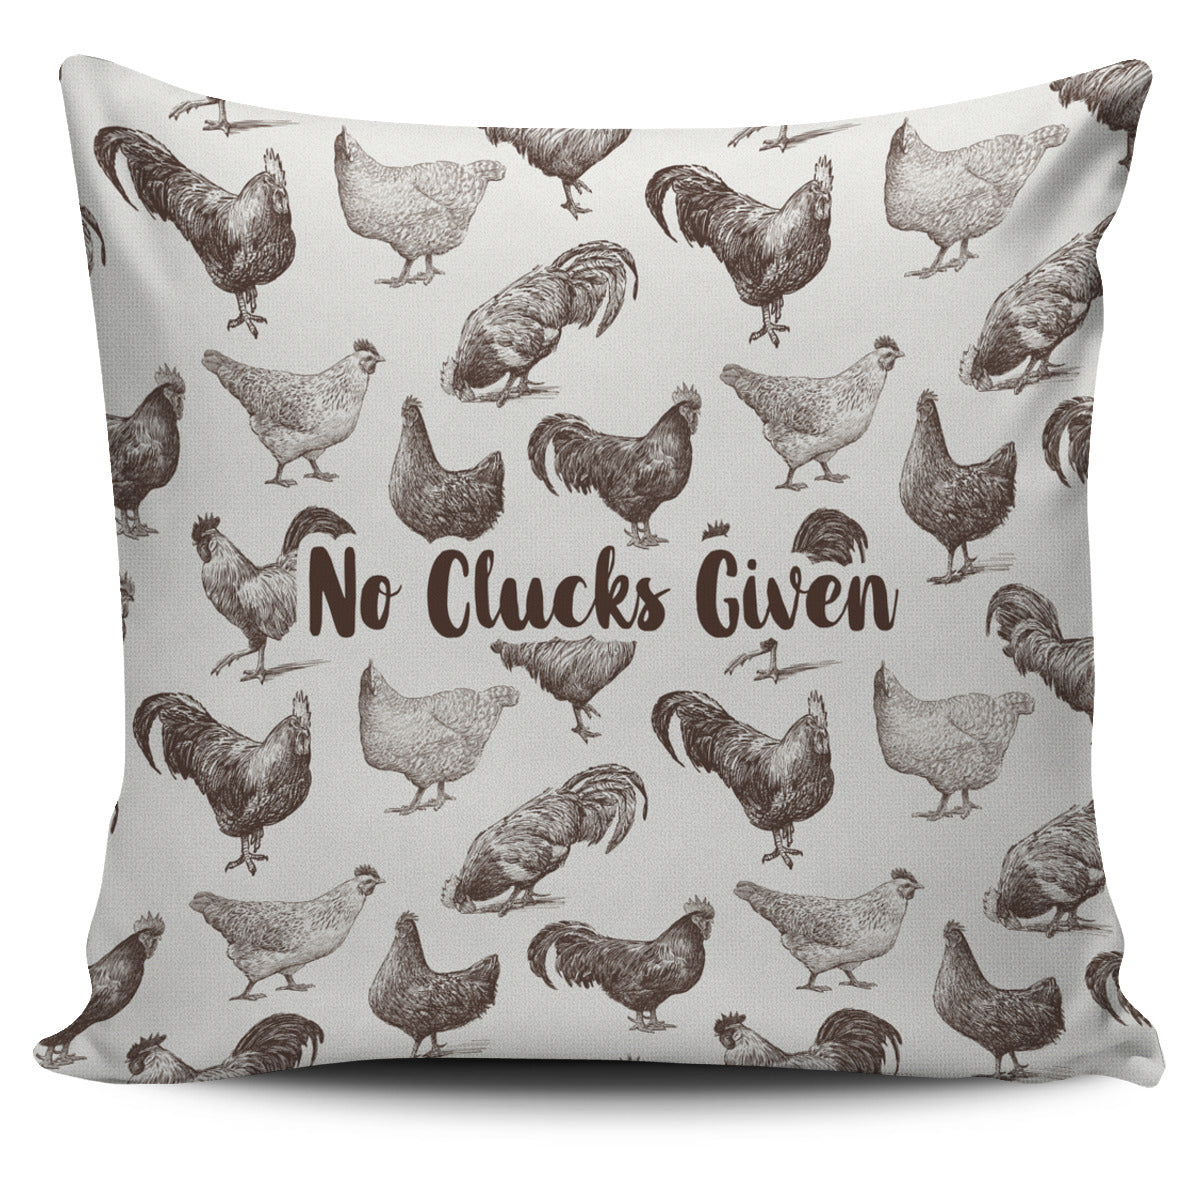 Chicken Clucks Pillow Cover